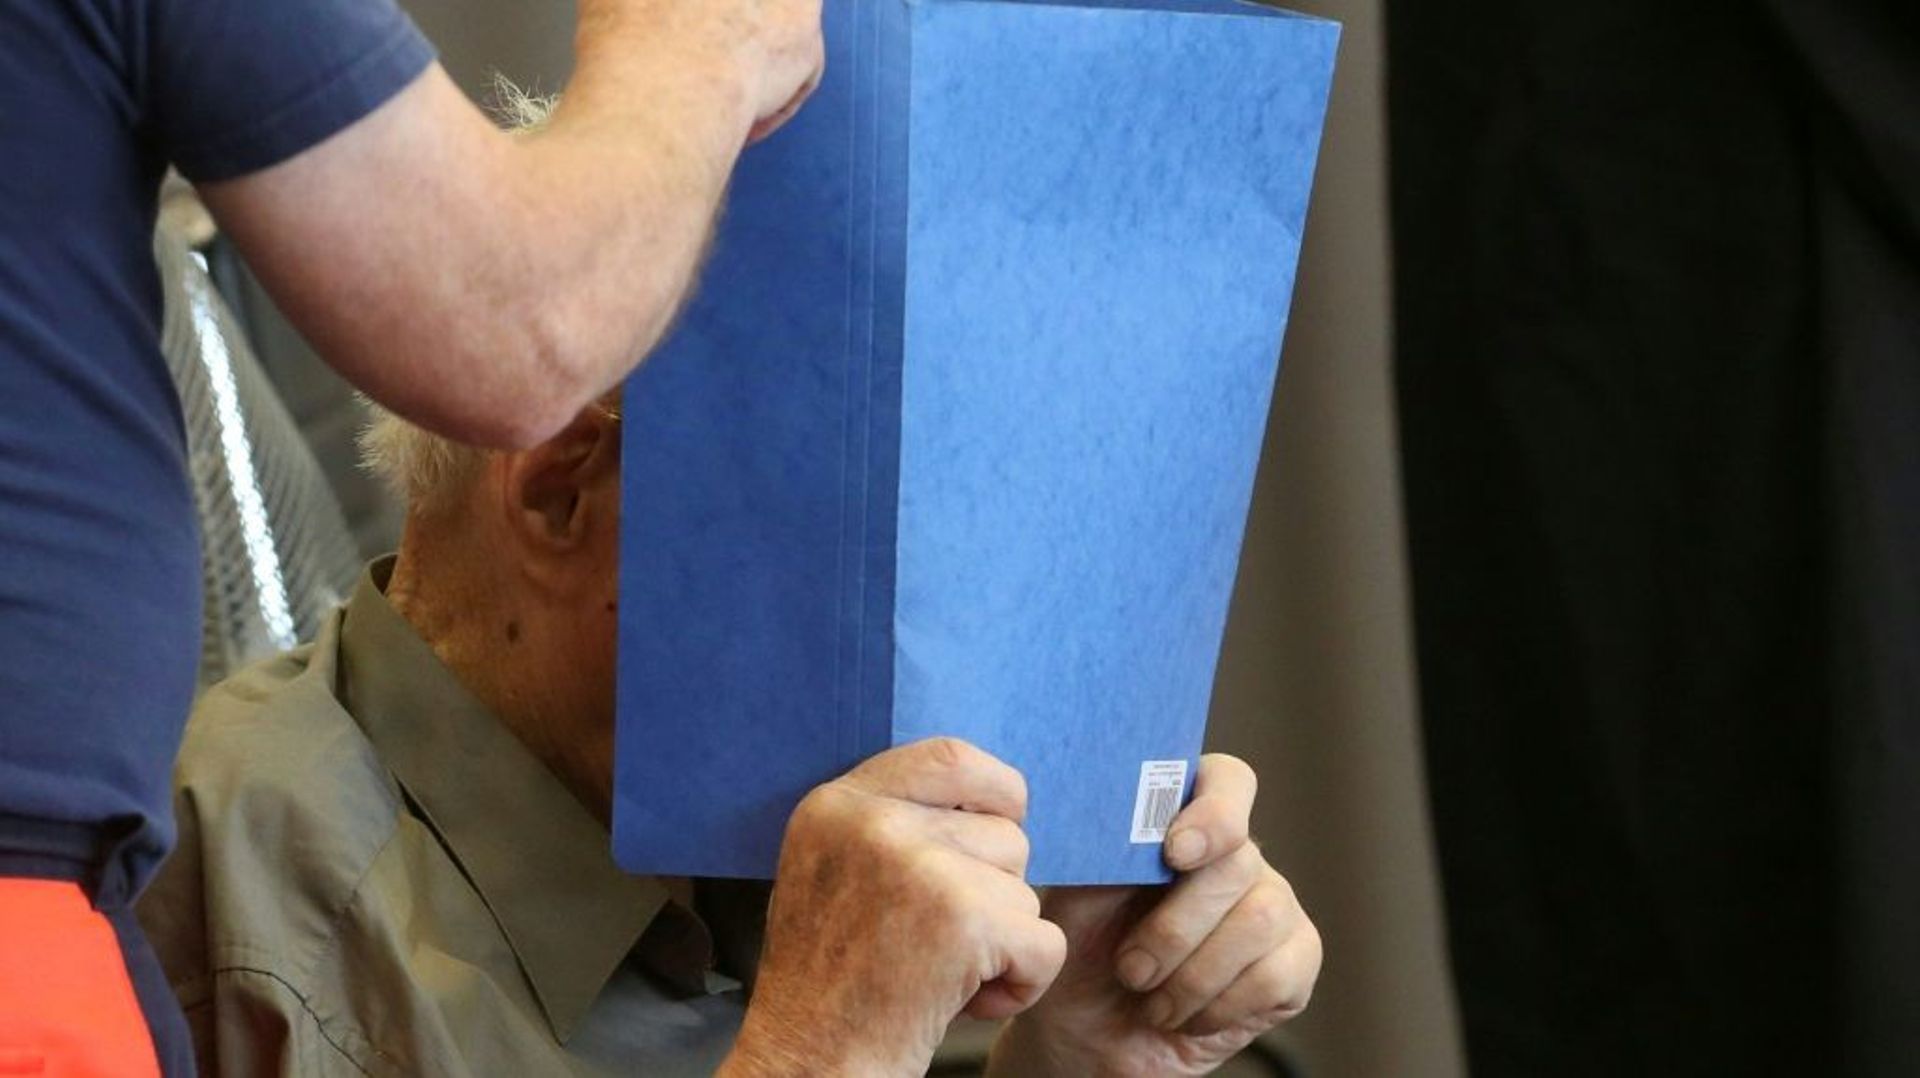 Josef Schütz, accusé de crimes nazis) cache son visage derrière un document à son arrivée au tribunal de Brandebourg-sur-la-Havel, le 28 juin 2022 en Allemagne